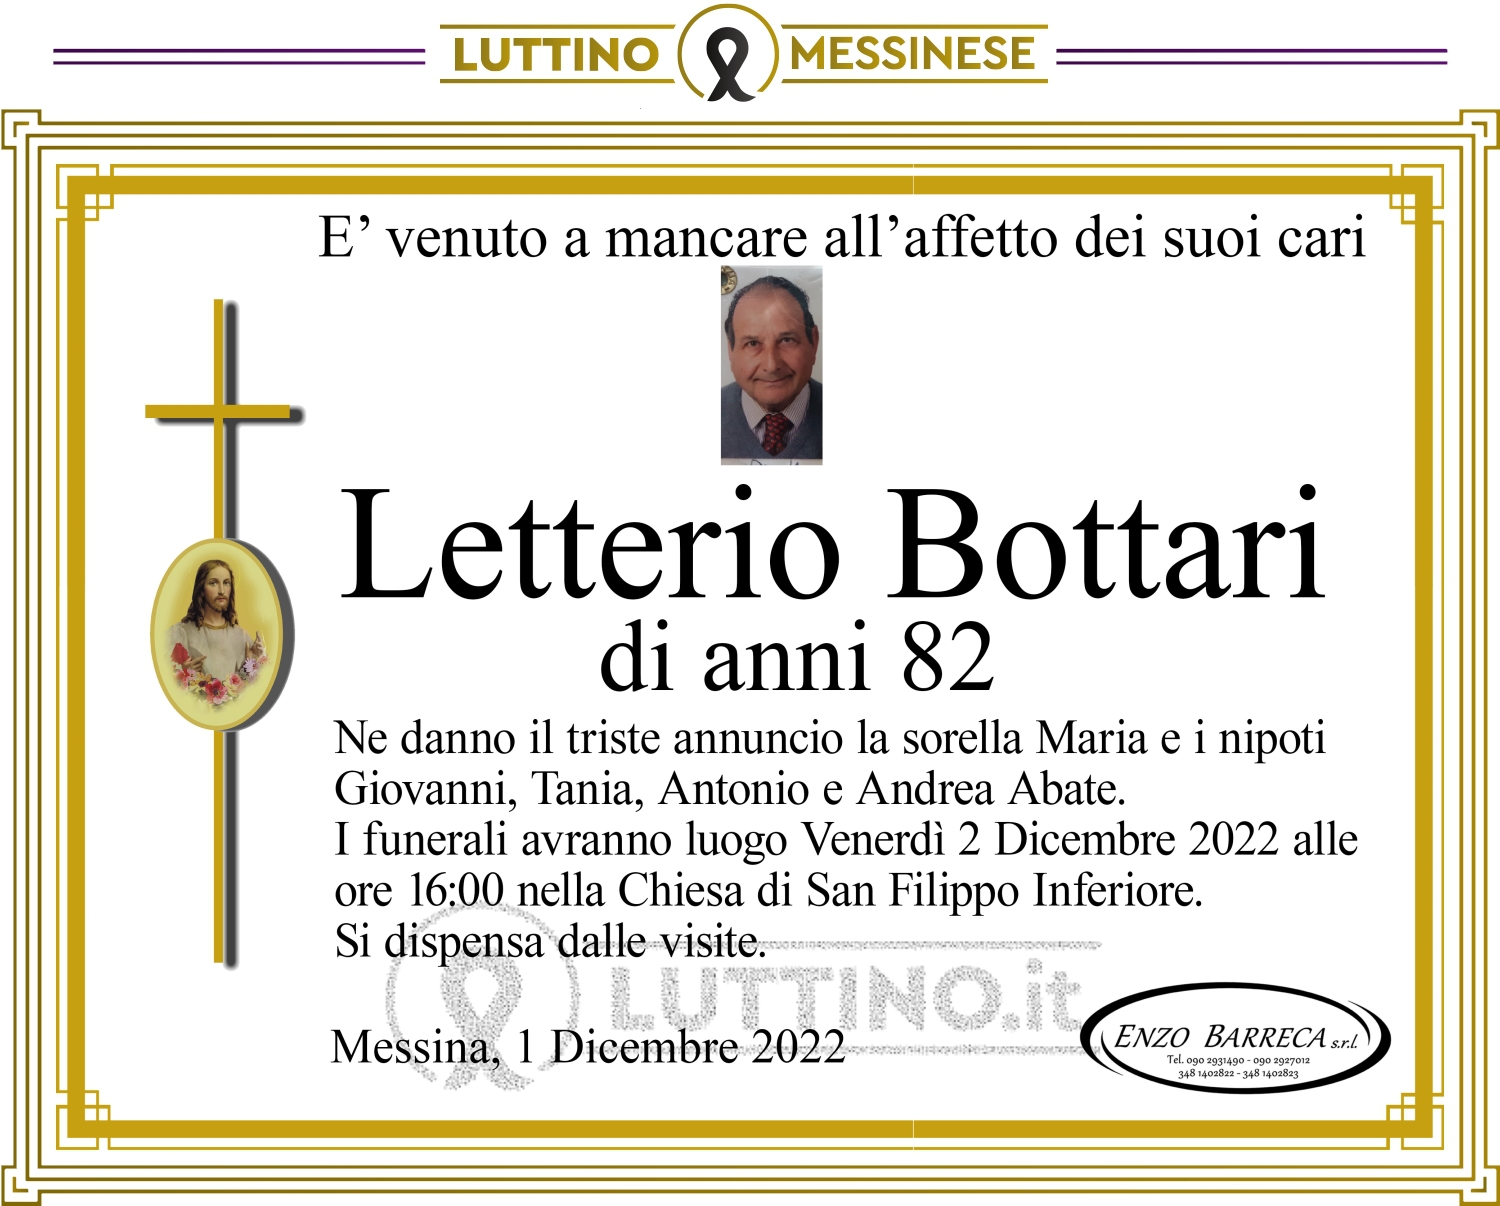 Letterio  Bottari